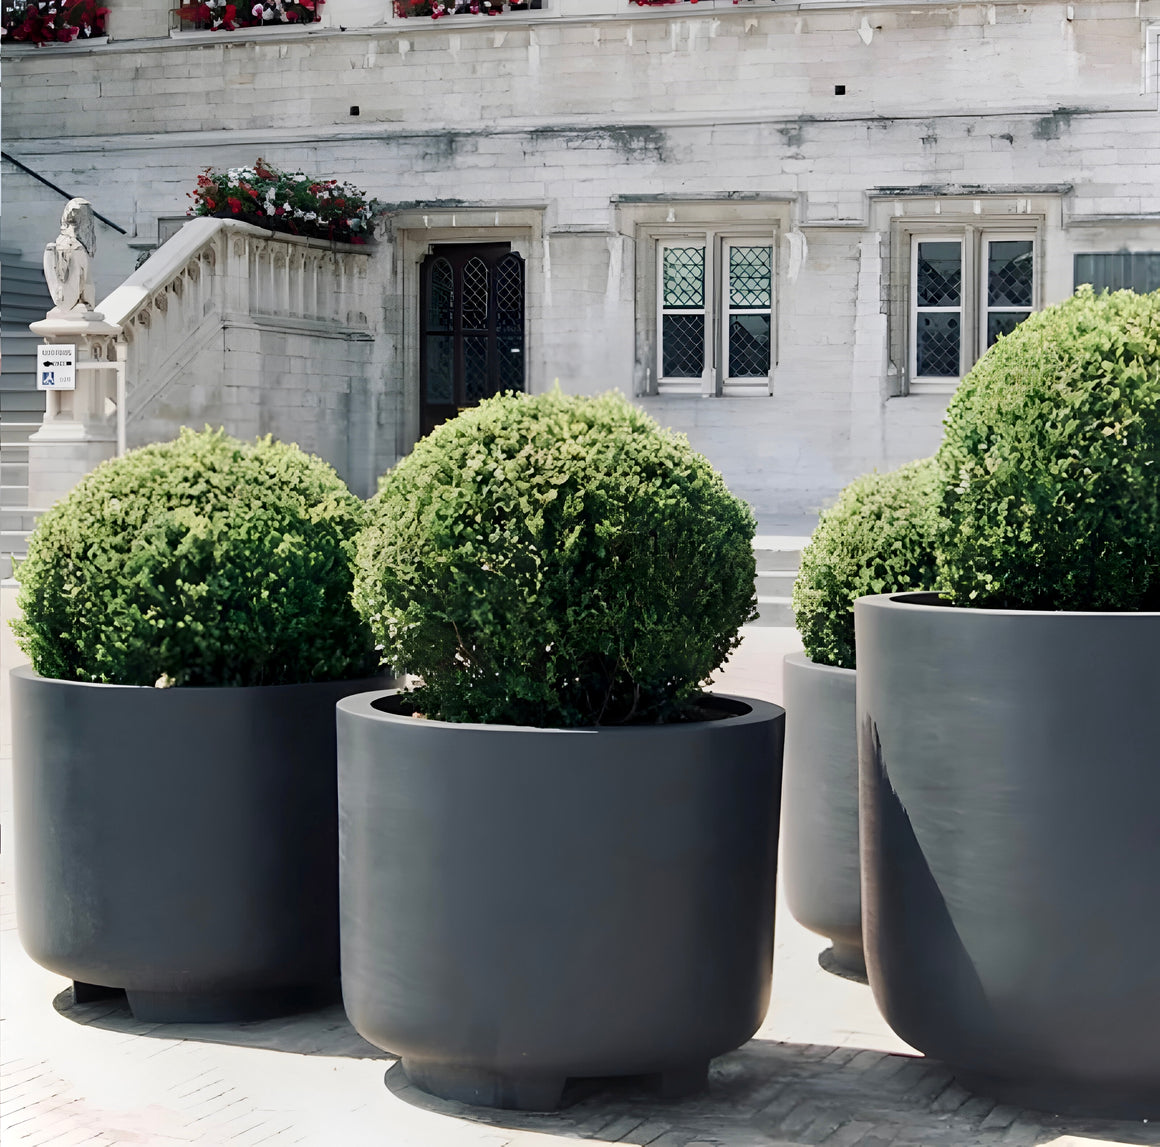 XXL 31 - 39 Inches Fiberglass commercial planter, Beautiful Plant Pots, Garden - Home - Public Decoration